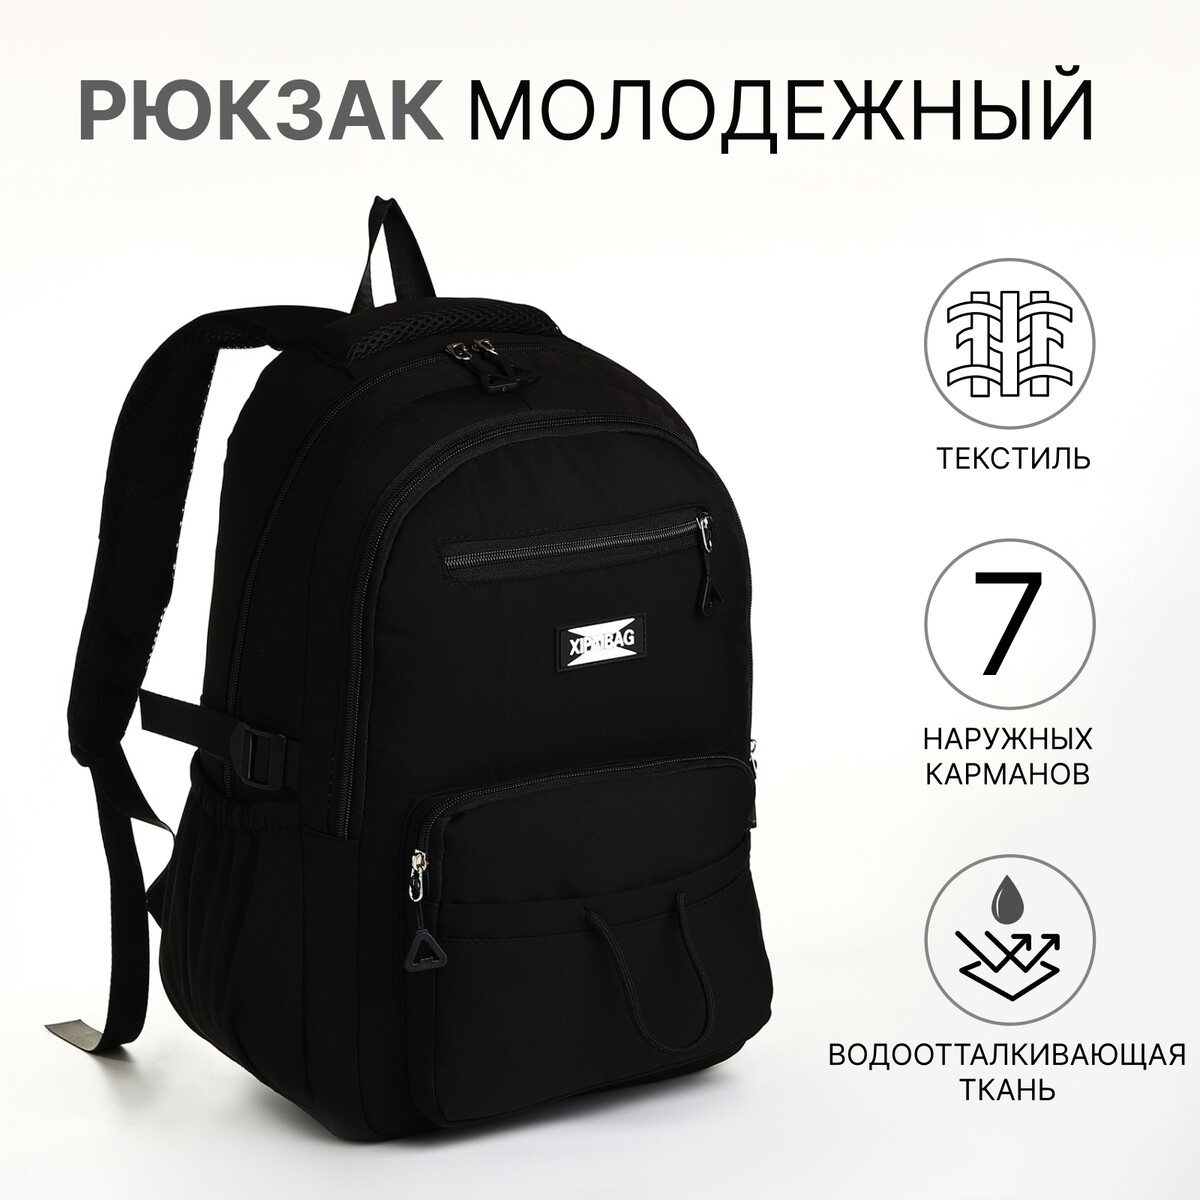 Рюкзак школьный из текстиля на молнии, 7 карманов, цвет черный рюкзак школьный из текстиля на молнии 7 карманов